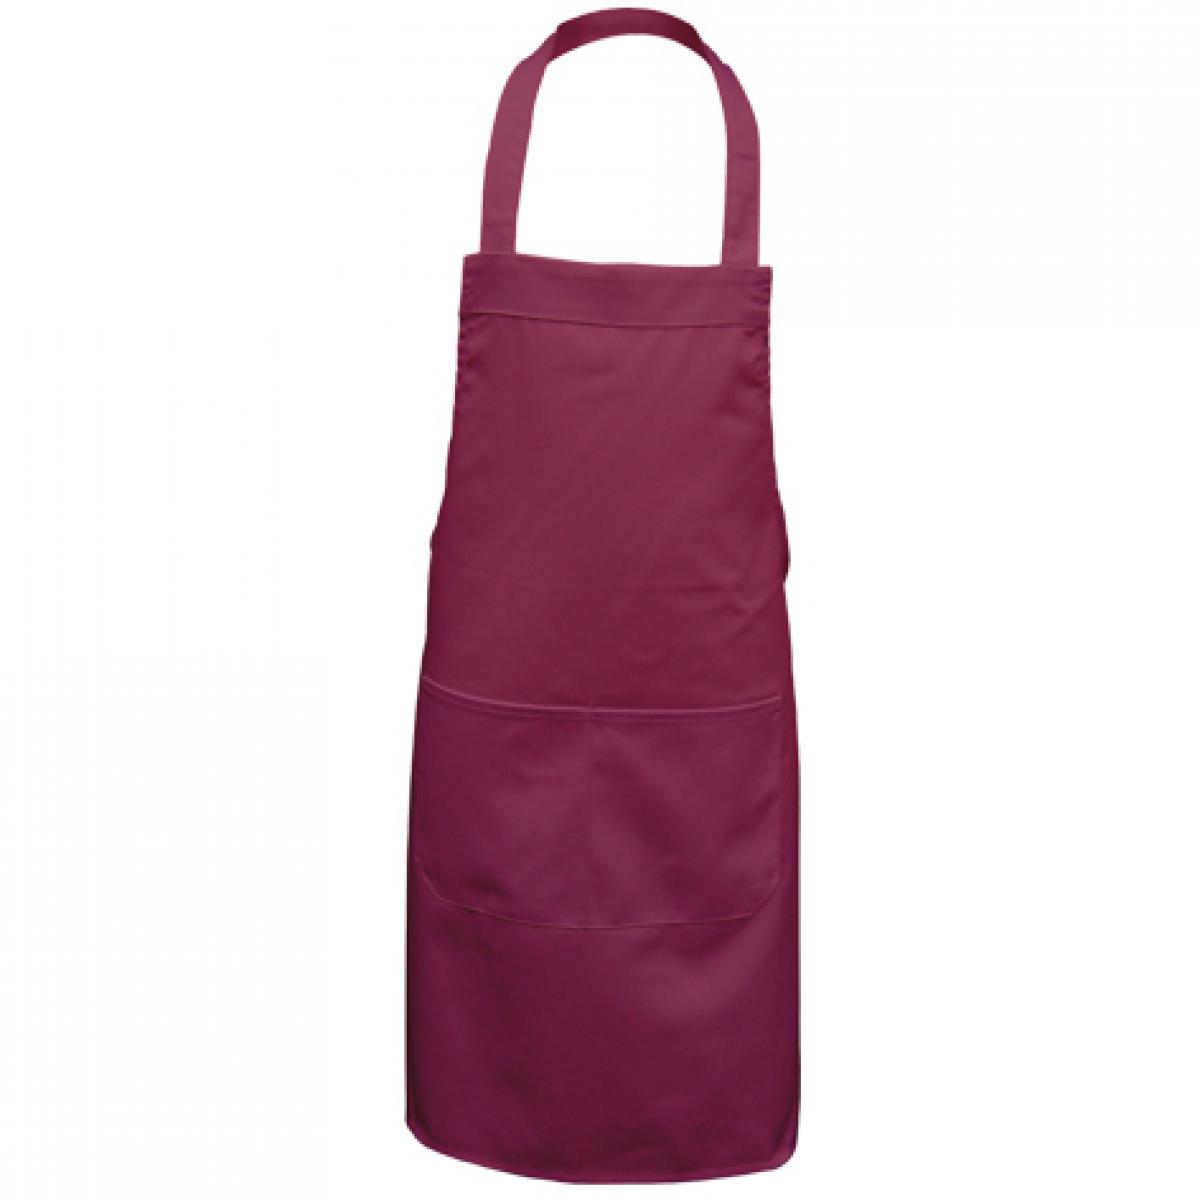 Hersteller: Link Kitchen Wear Herstellernummer: HS8073 Artikelbezeichnung: Hobby Apron - 73 x 80 cm - Waschbar bis 60 °C Farbe: Bordeaux